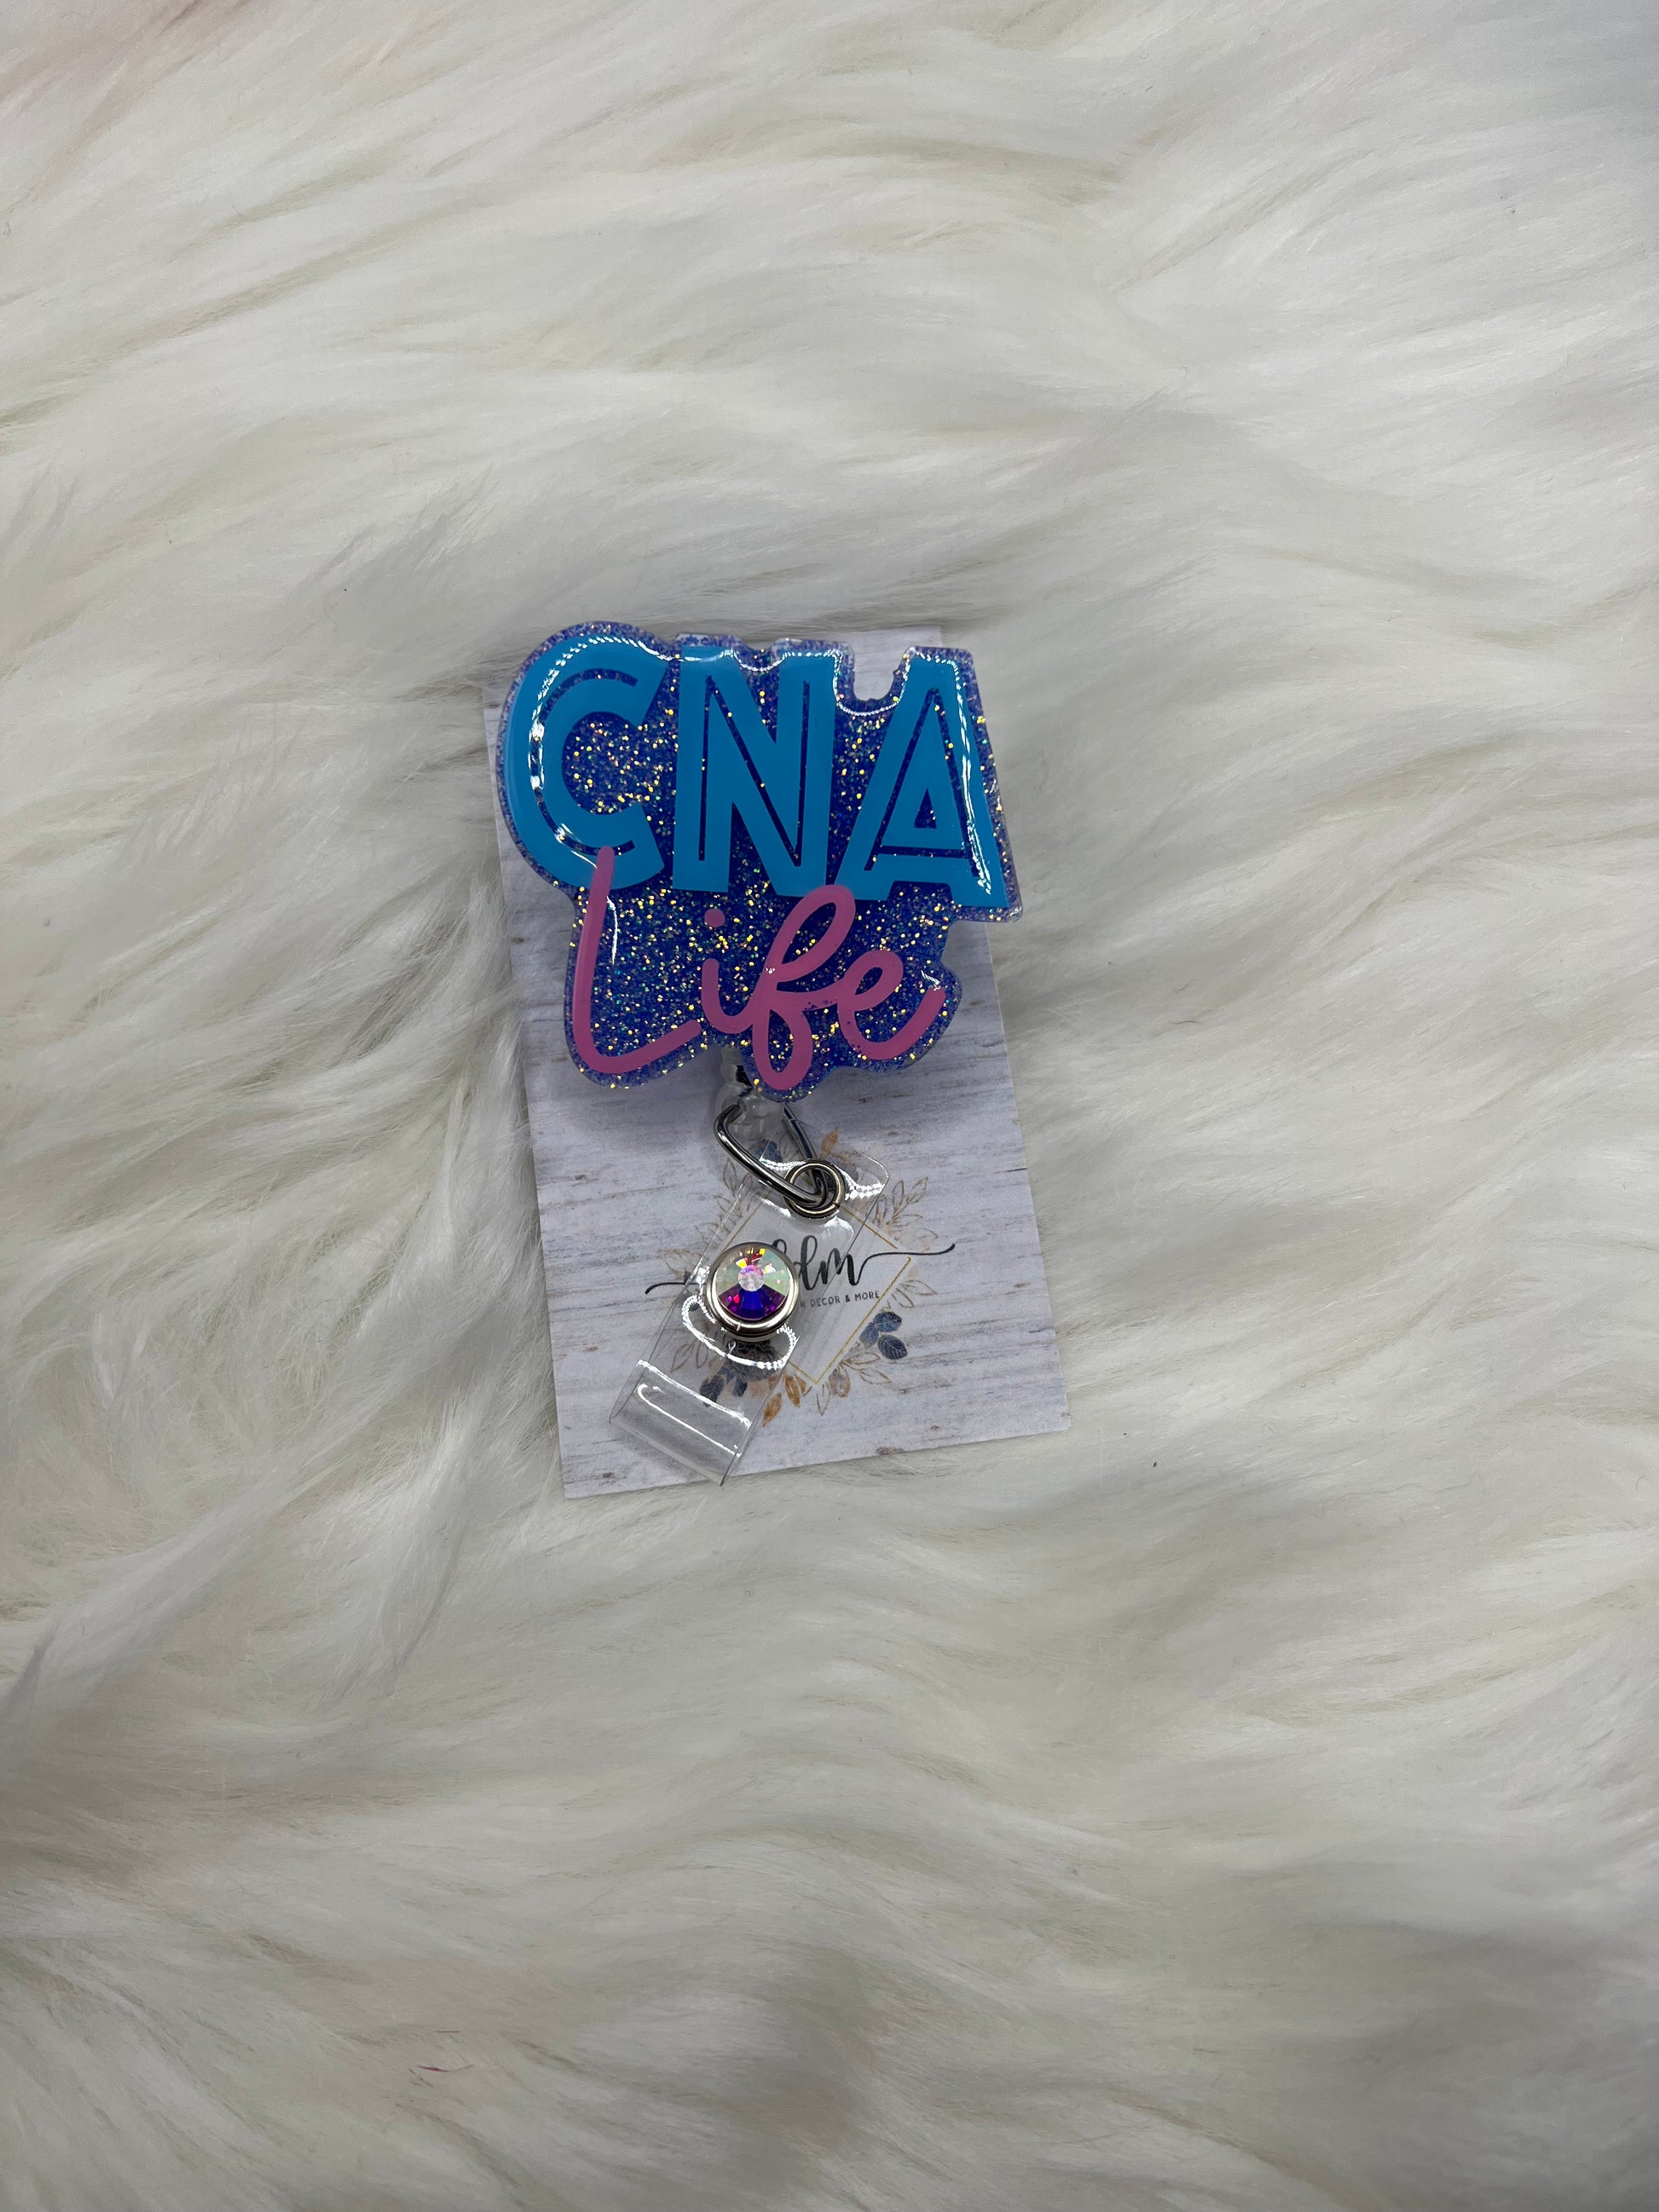 CNA Life Badge Reel